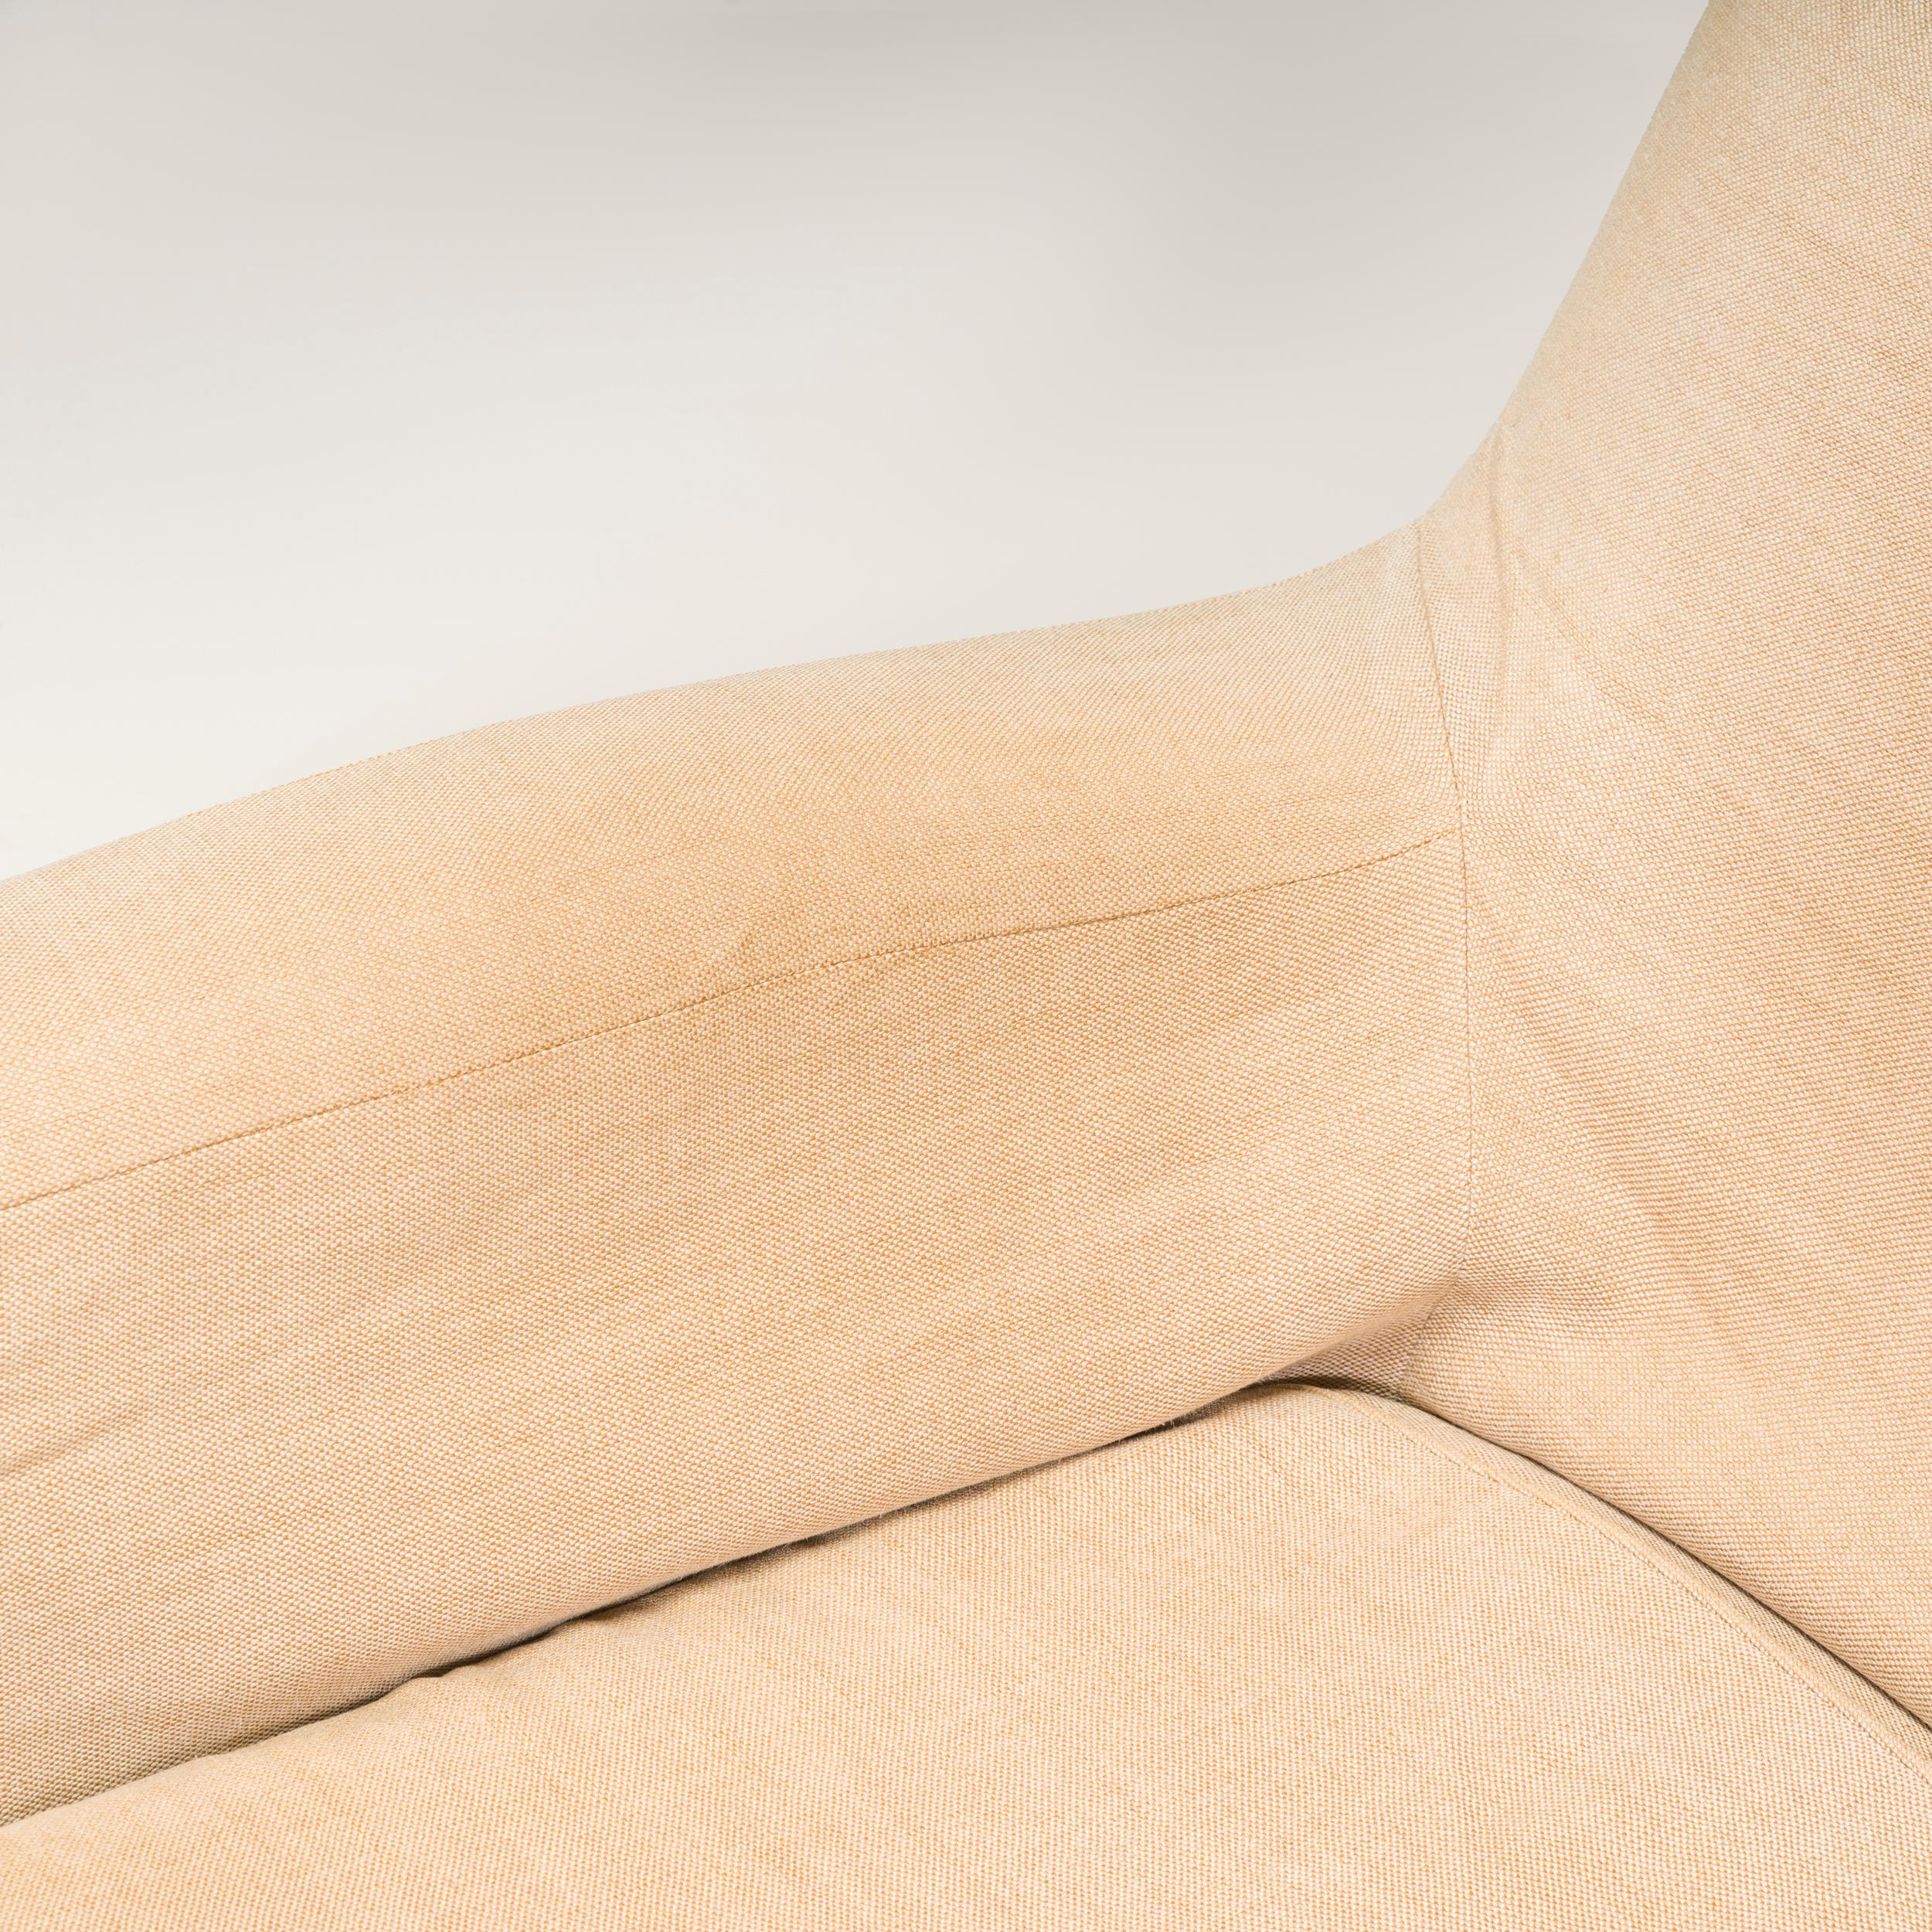 Christian Liaigre for Holly Hunt Basse Terra Beige Linen Slipcover Sofa For Sale 6